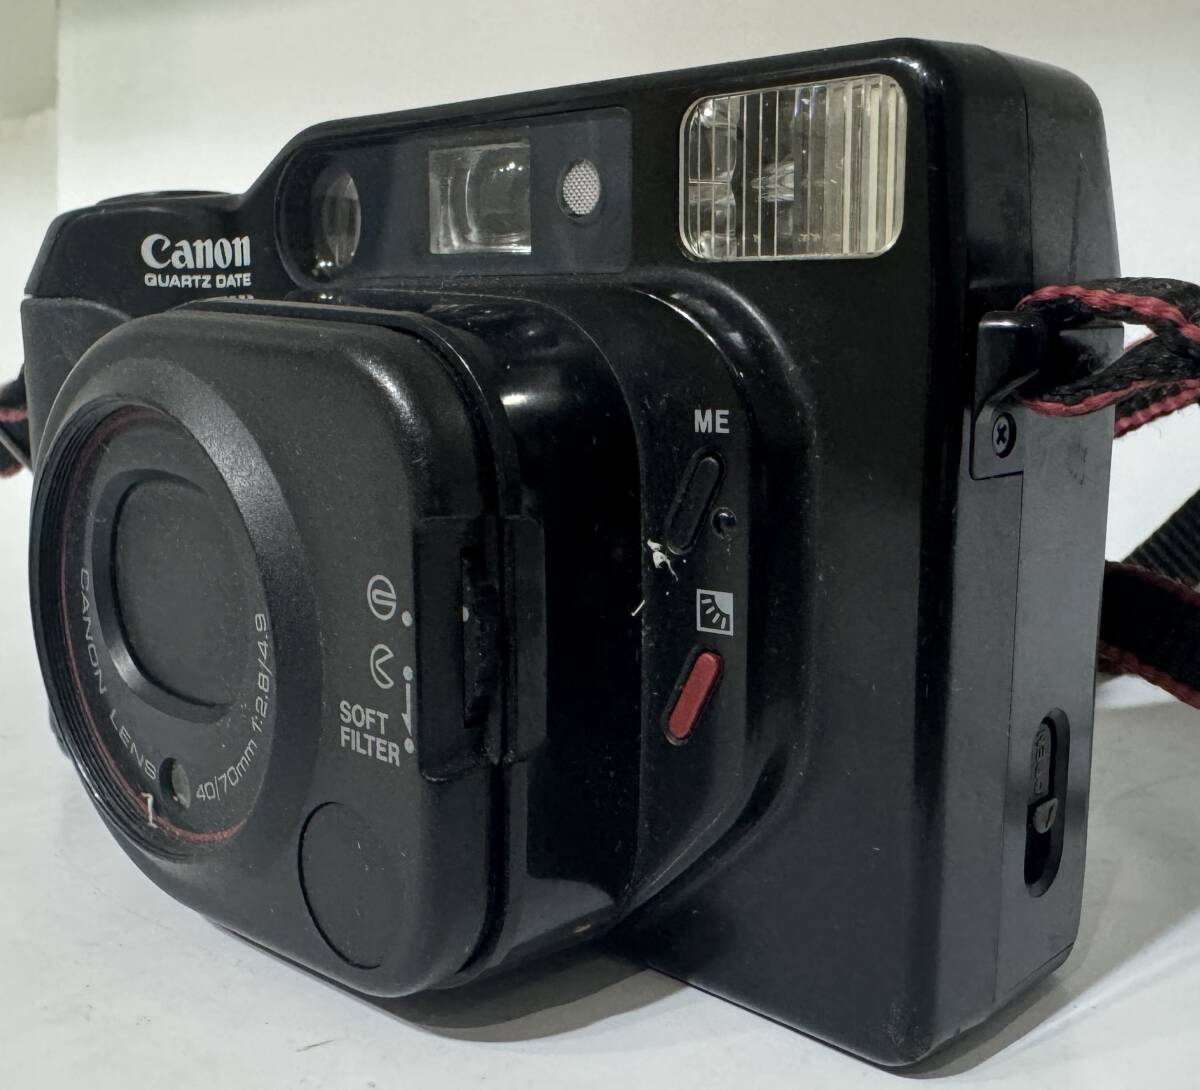 Canon Autoboy TELE QUARTZ DATE キャノン オートボーイ テレ クオーツデート コンパクトカメラ フィルムカメラ _画像3